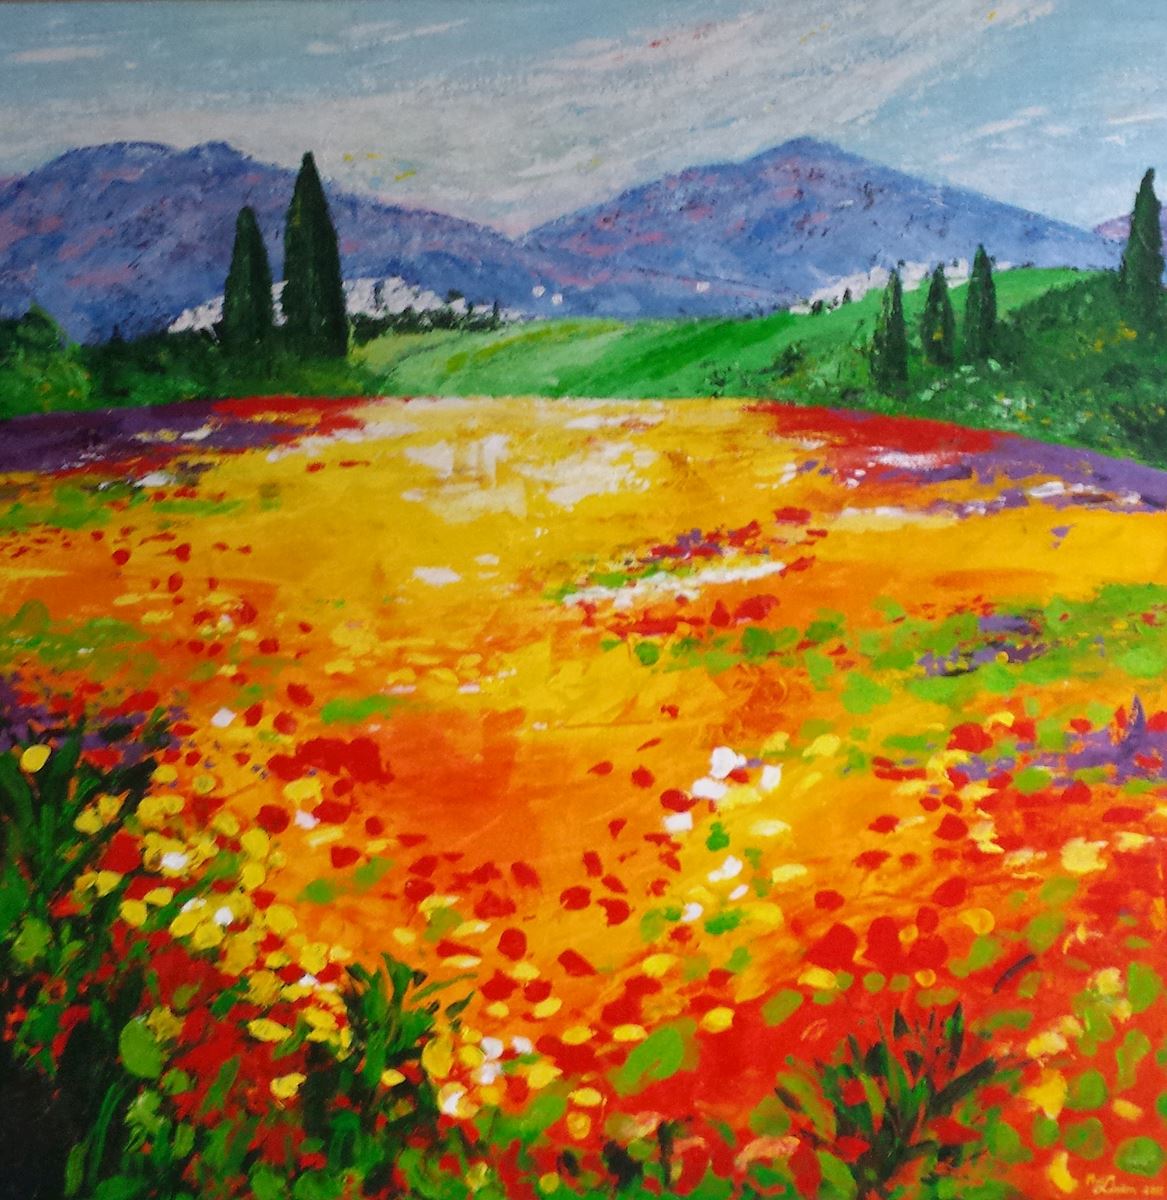 a kunst uit de kast landschap toscane voorjaar italie klaprozen groot schilderij nicole van der linden italy tuscany paletmes noordwijk bollenstreek